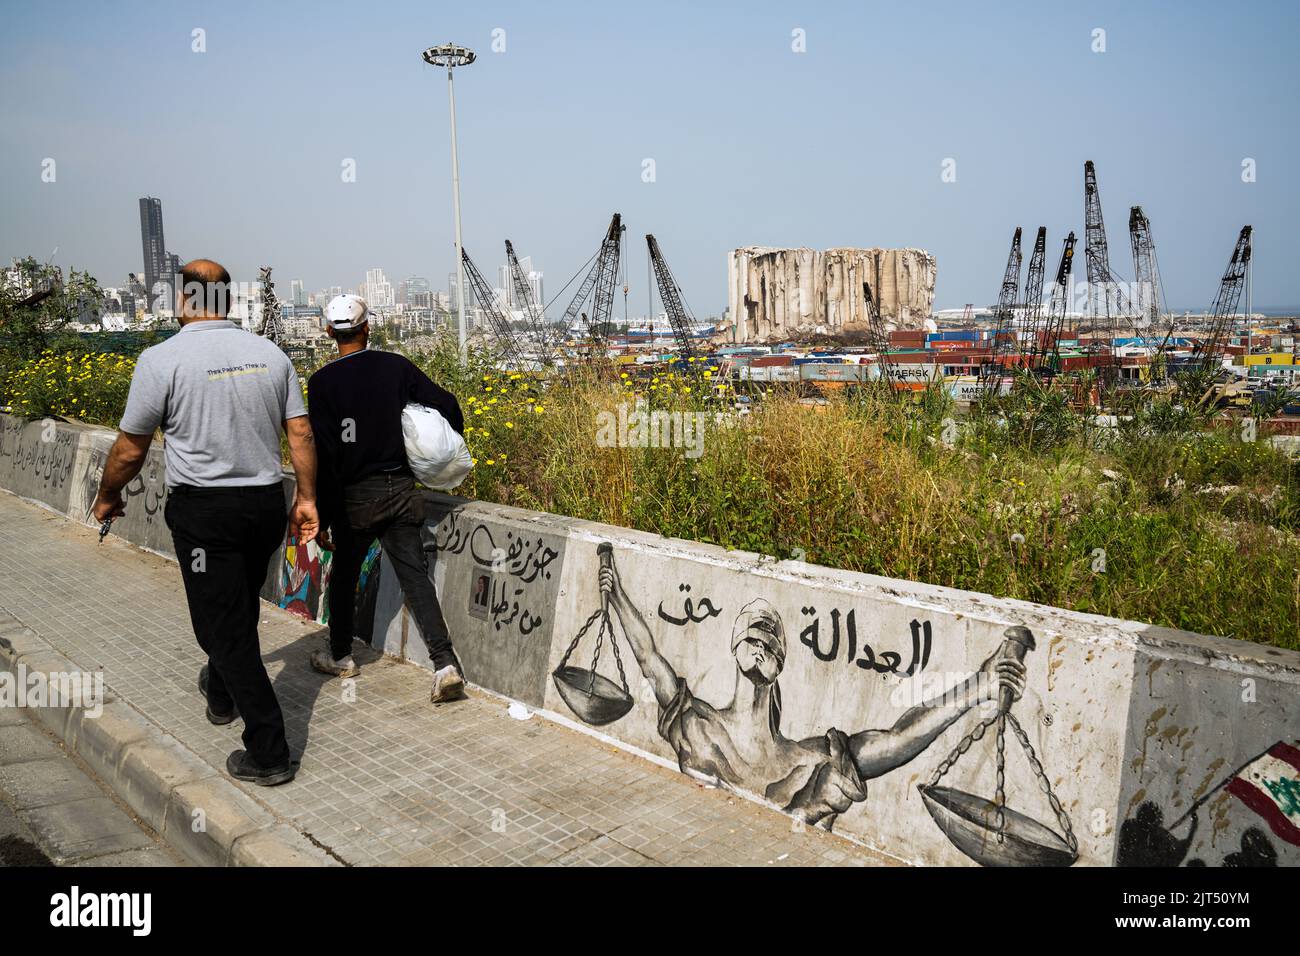 Beirut, Libano: Graffiti sul muro del porto che mostra i sili di grano distrutti dalla massiccia esplosione di 2.750 tonnellate di nitrato di ammonio immagazzinato nel porto della città che ha devastato il porto e la città il 8/4/2020 Foto Stock